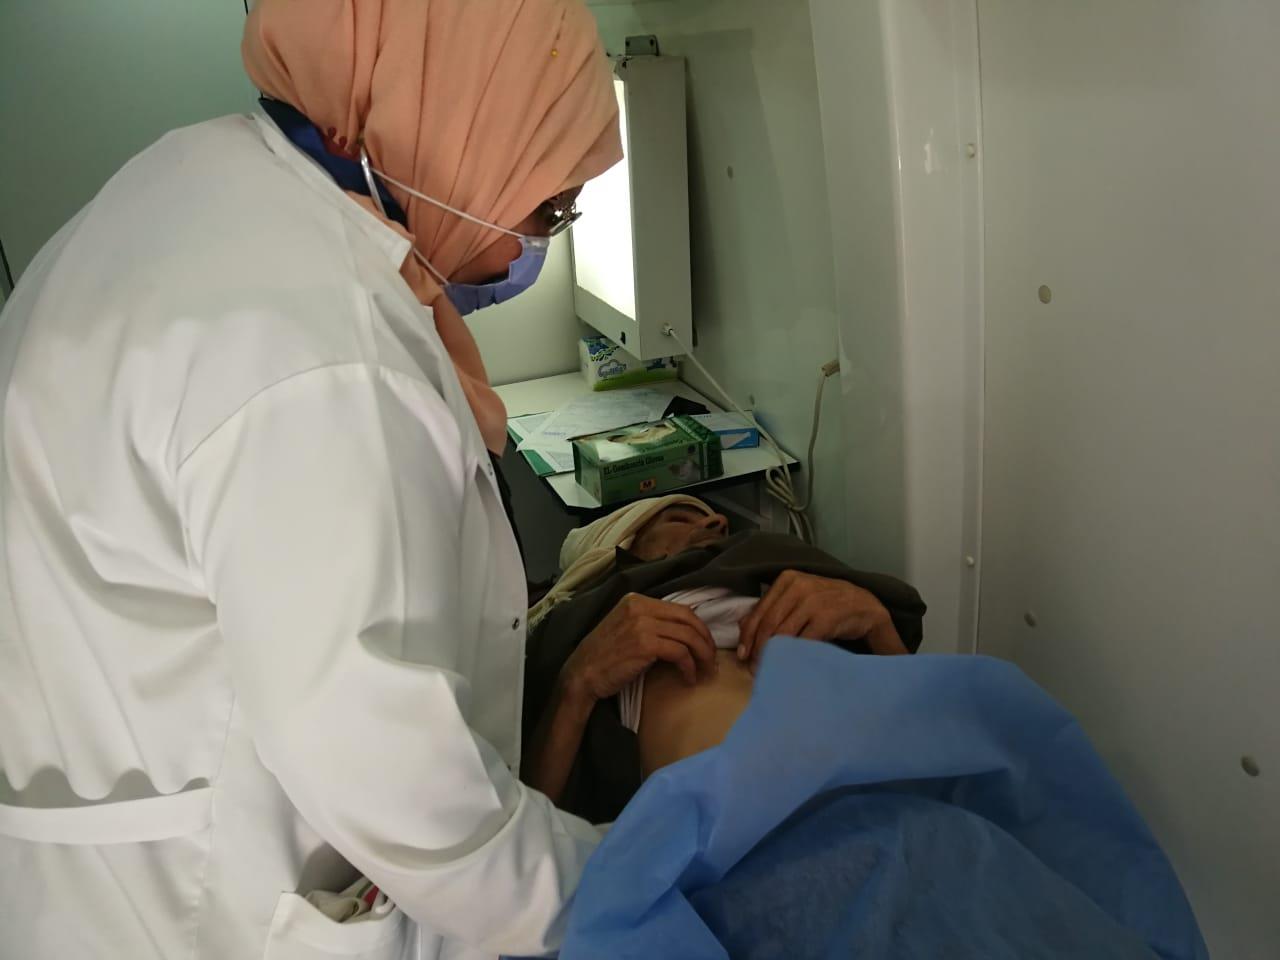 الكشف على  1141 مريضاً فى قافلة علاجية بقرية كفر يوسف مركز شربين بالدقهلية  .